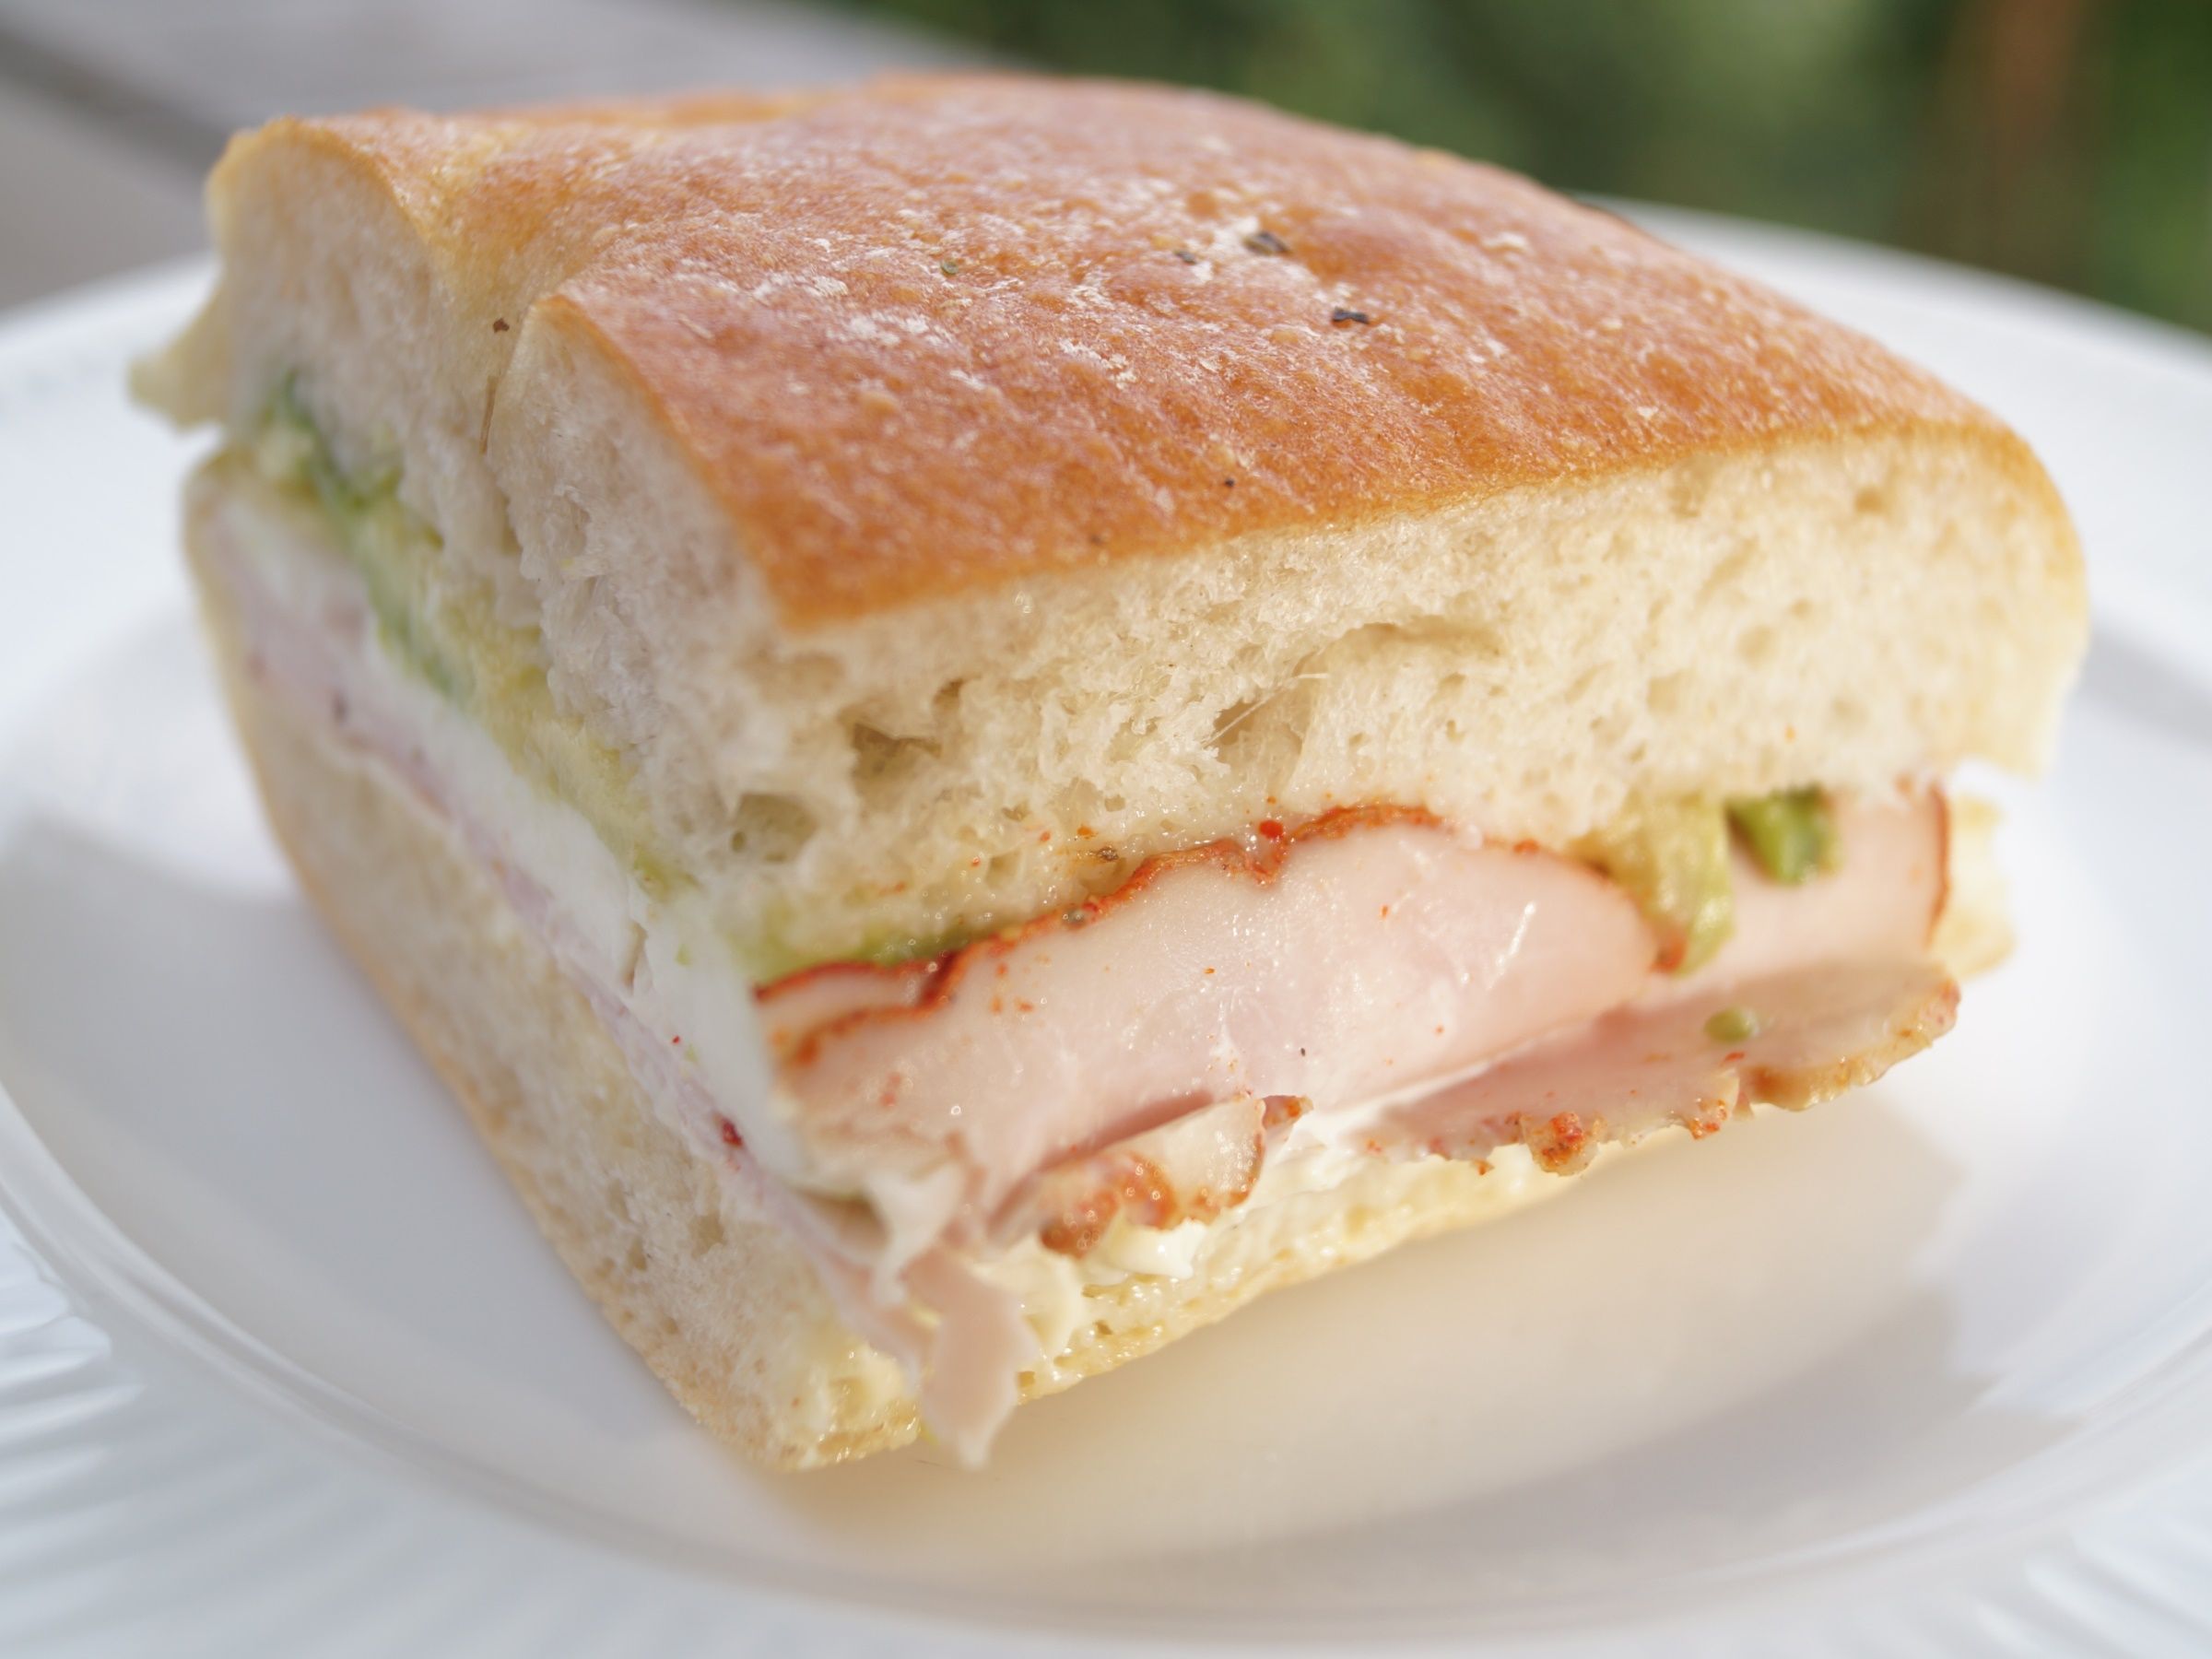 Sandwich med skinke og avocado